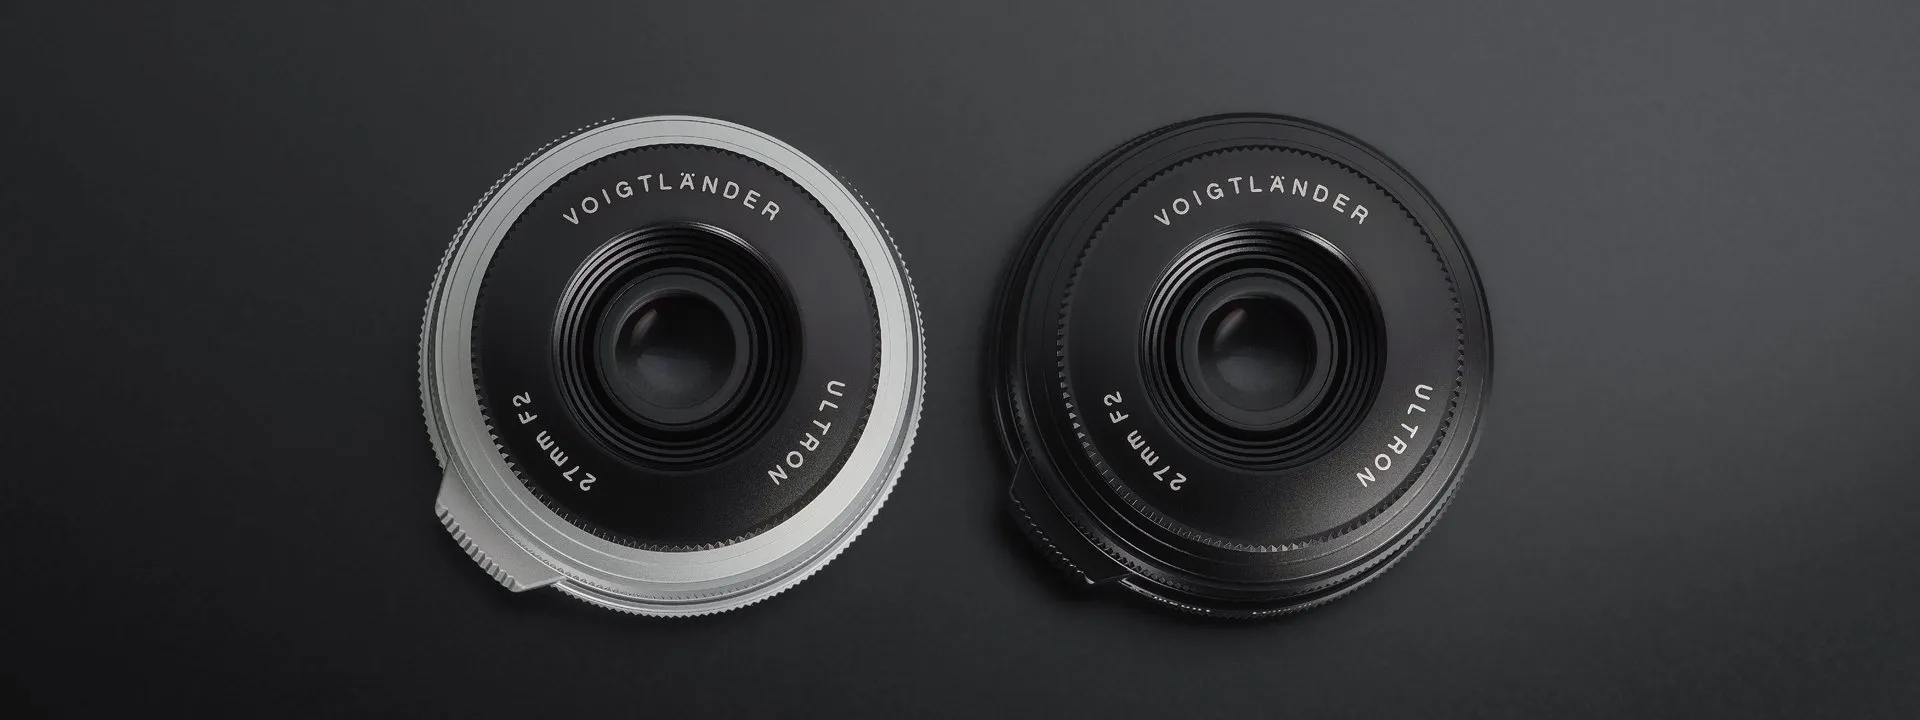 Cosina giới thiệu ống kính Voigtlander Ultron 27mm F2 dành riêng cho Fujifilm X